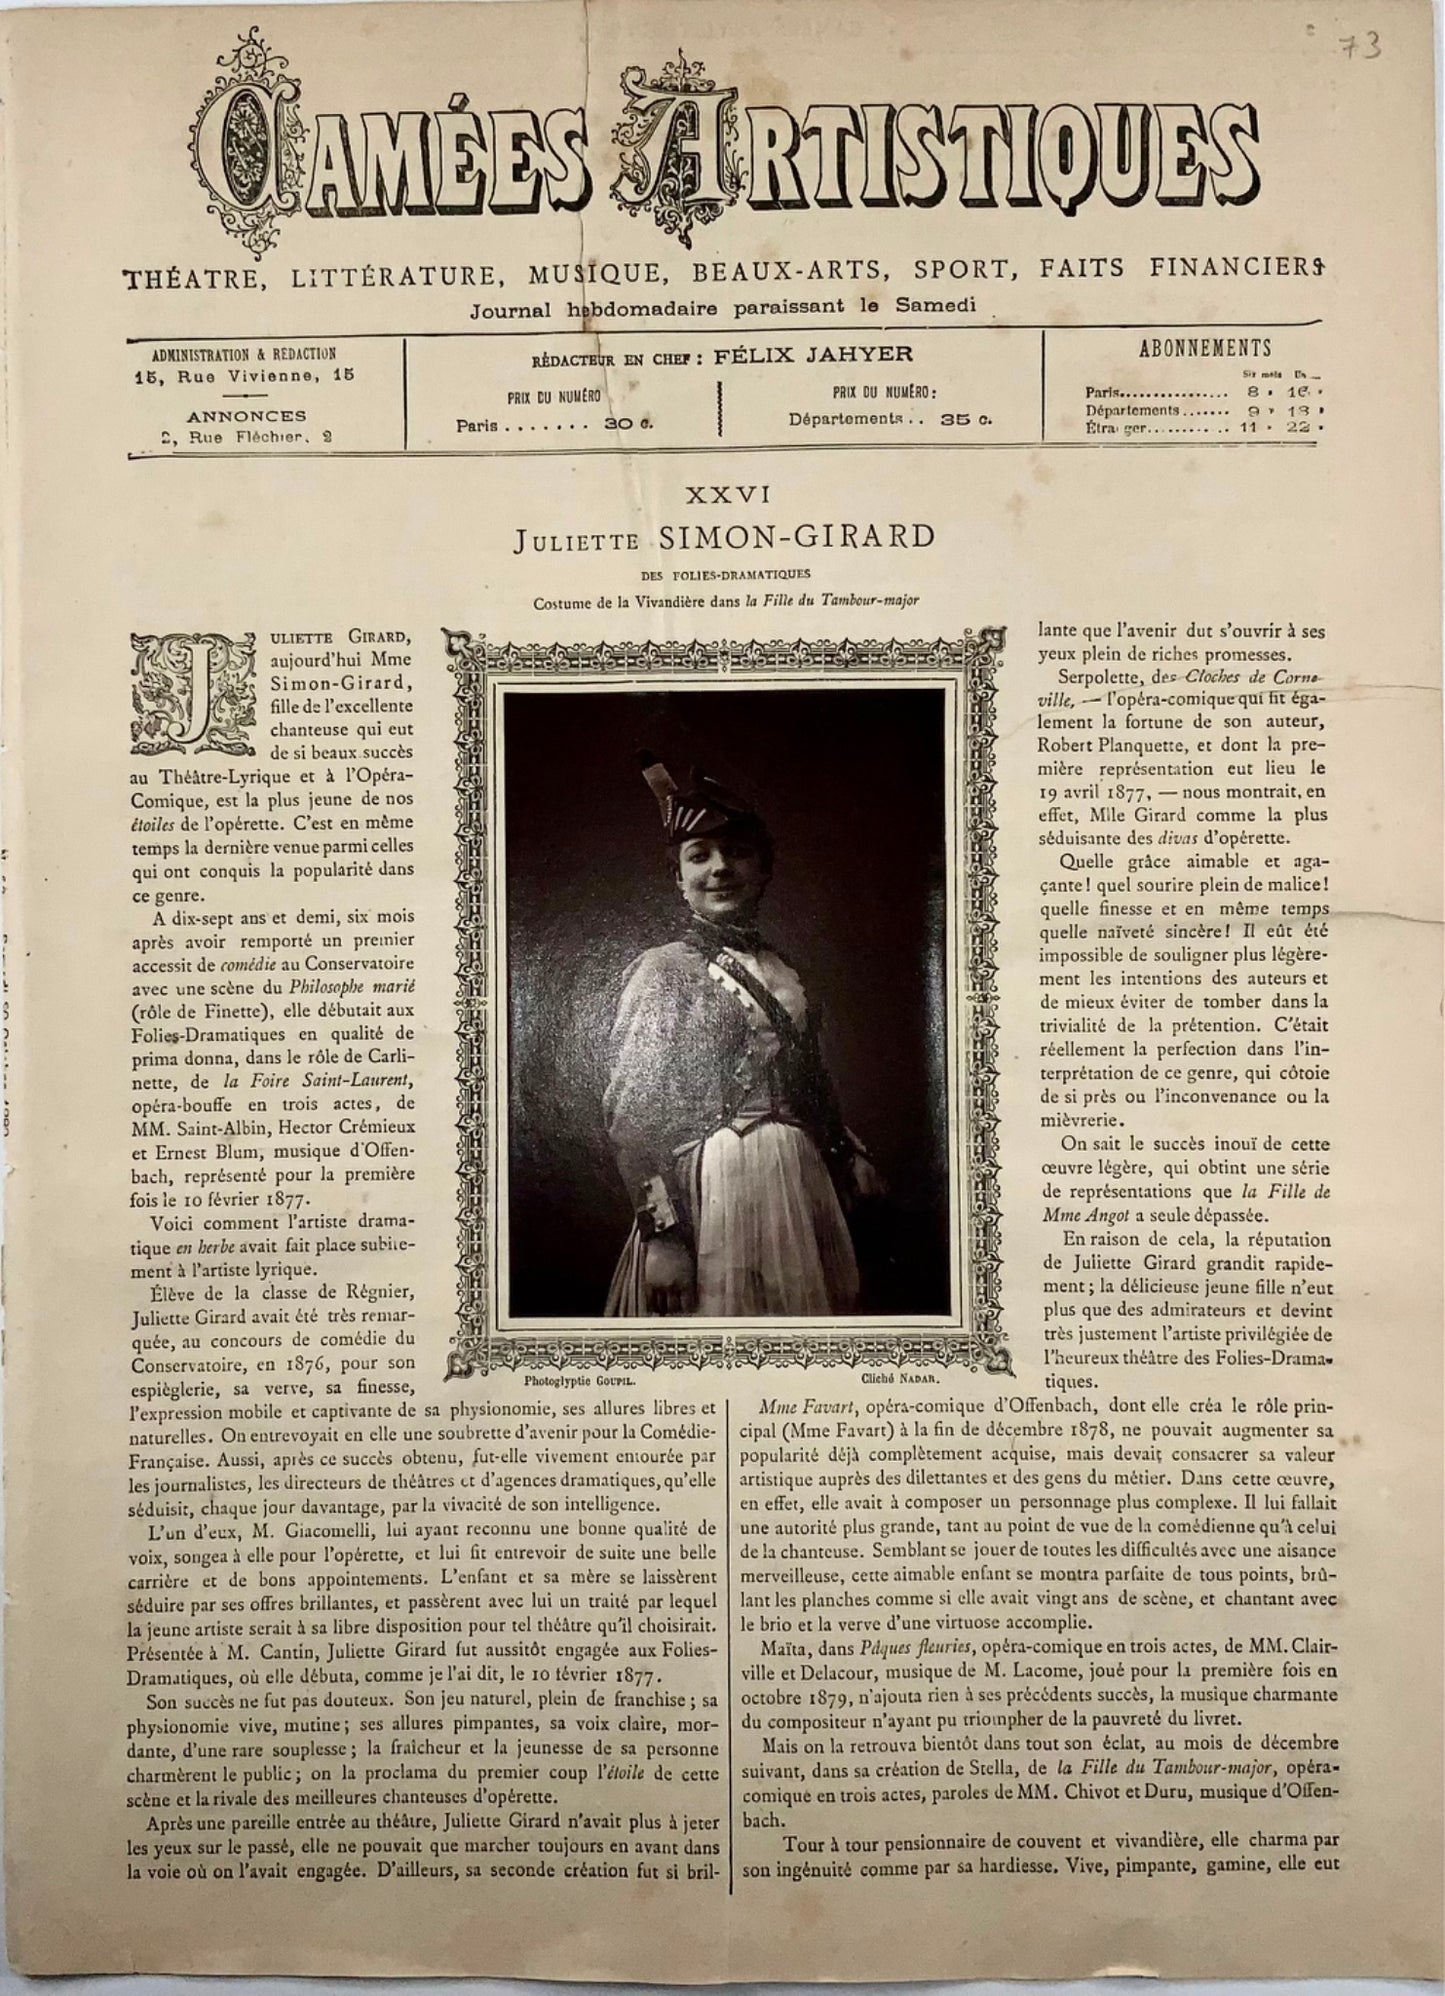 1887 Juliette Simon-Girard, Camées Artistiques con fotografia, giornale